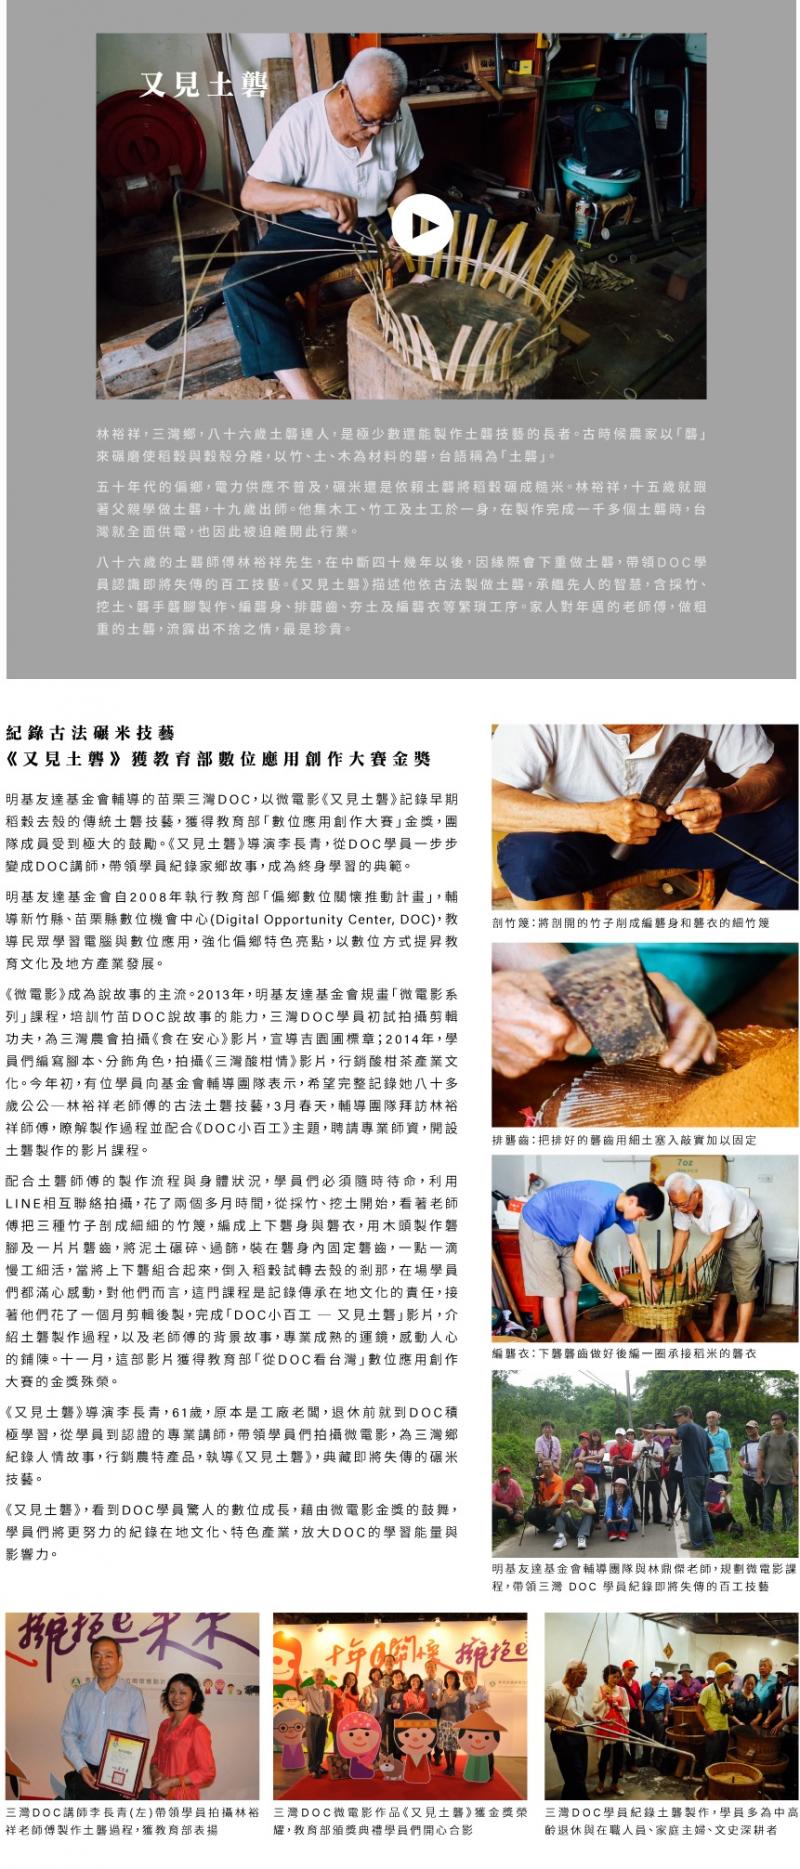 紀錄古法碾米技藝 《又見土礱》獲教育部「數位應用創作大賽」金獎-封面照